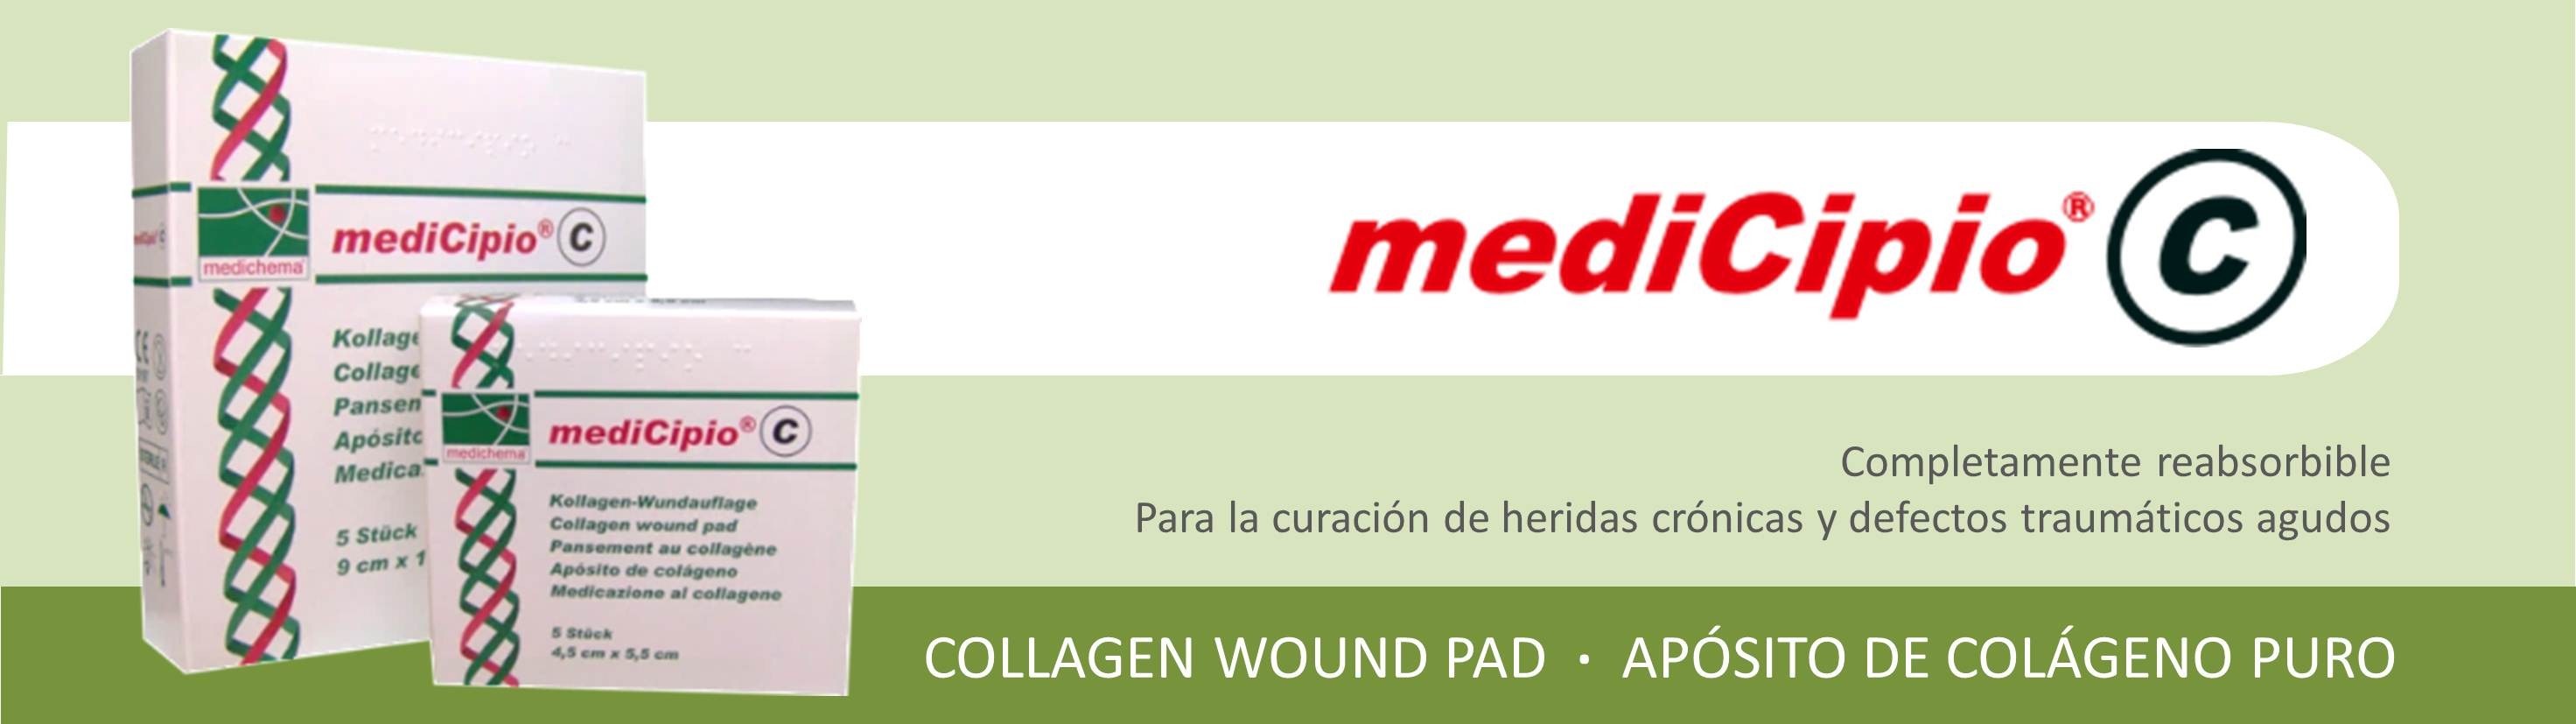 Banner mediCipio